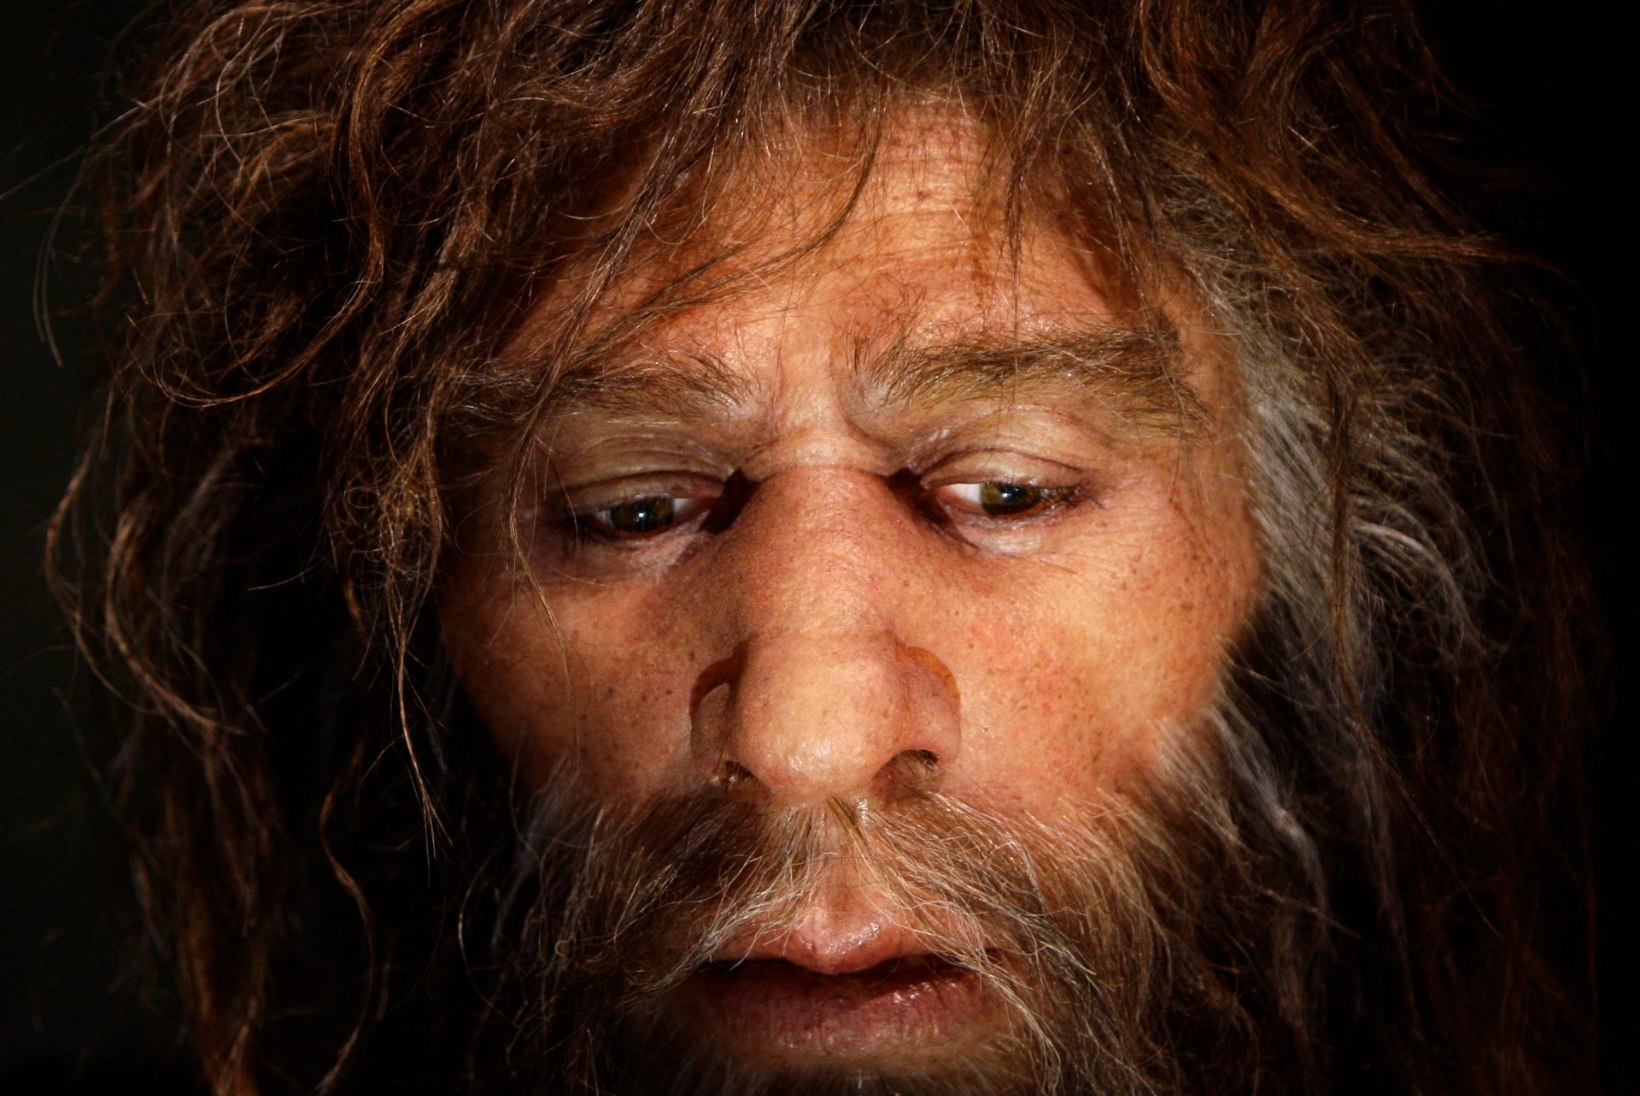 Kas neandertallased kasutasid valuvaigisteid ja antibiootikume?